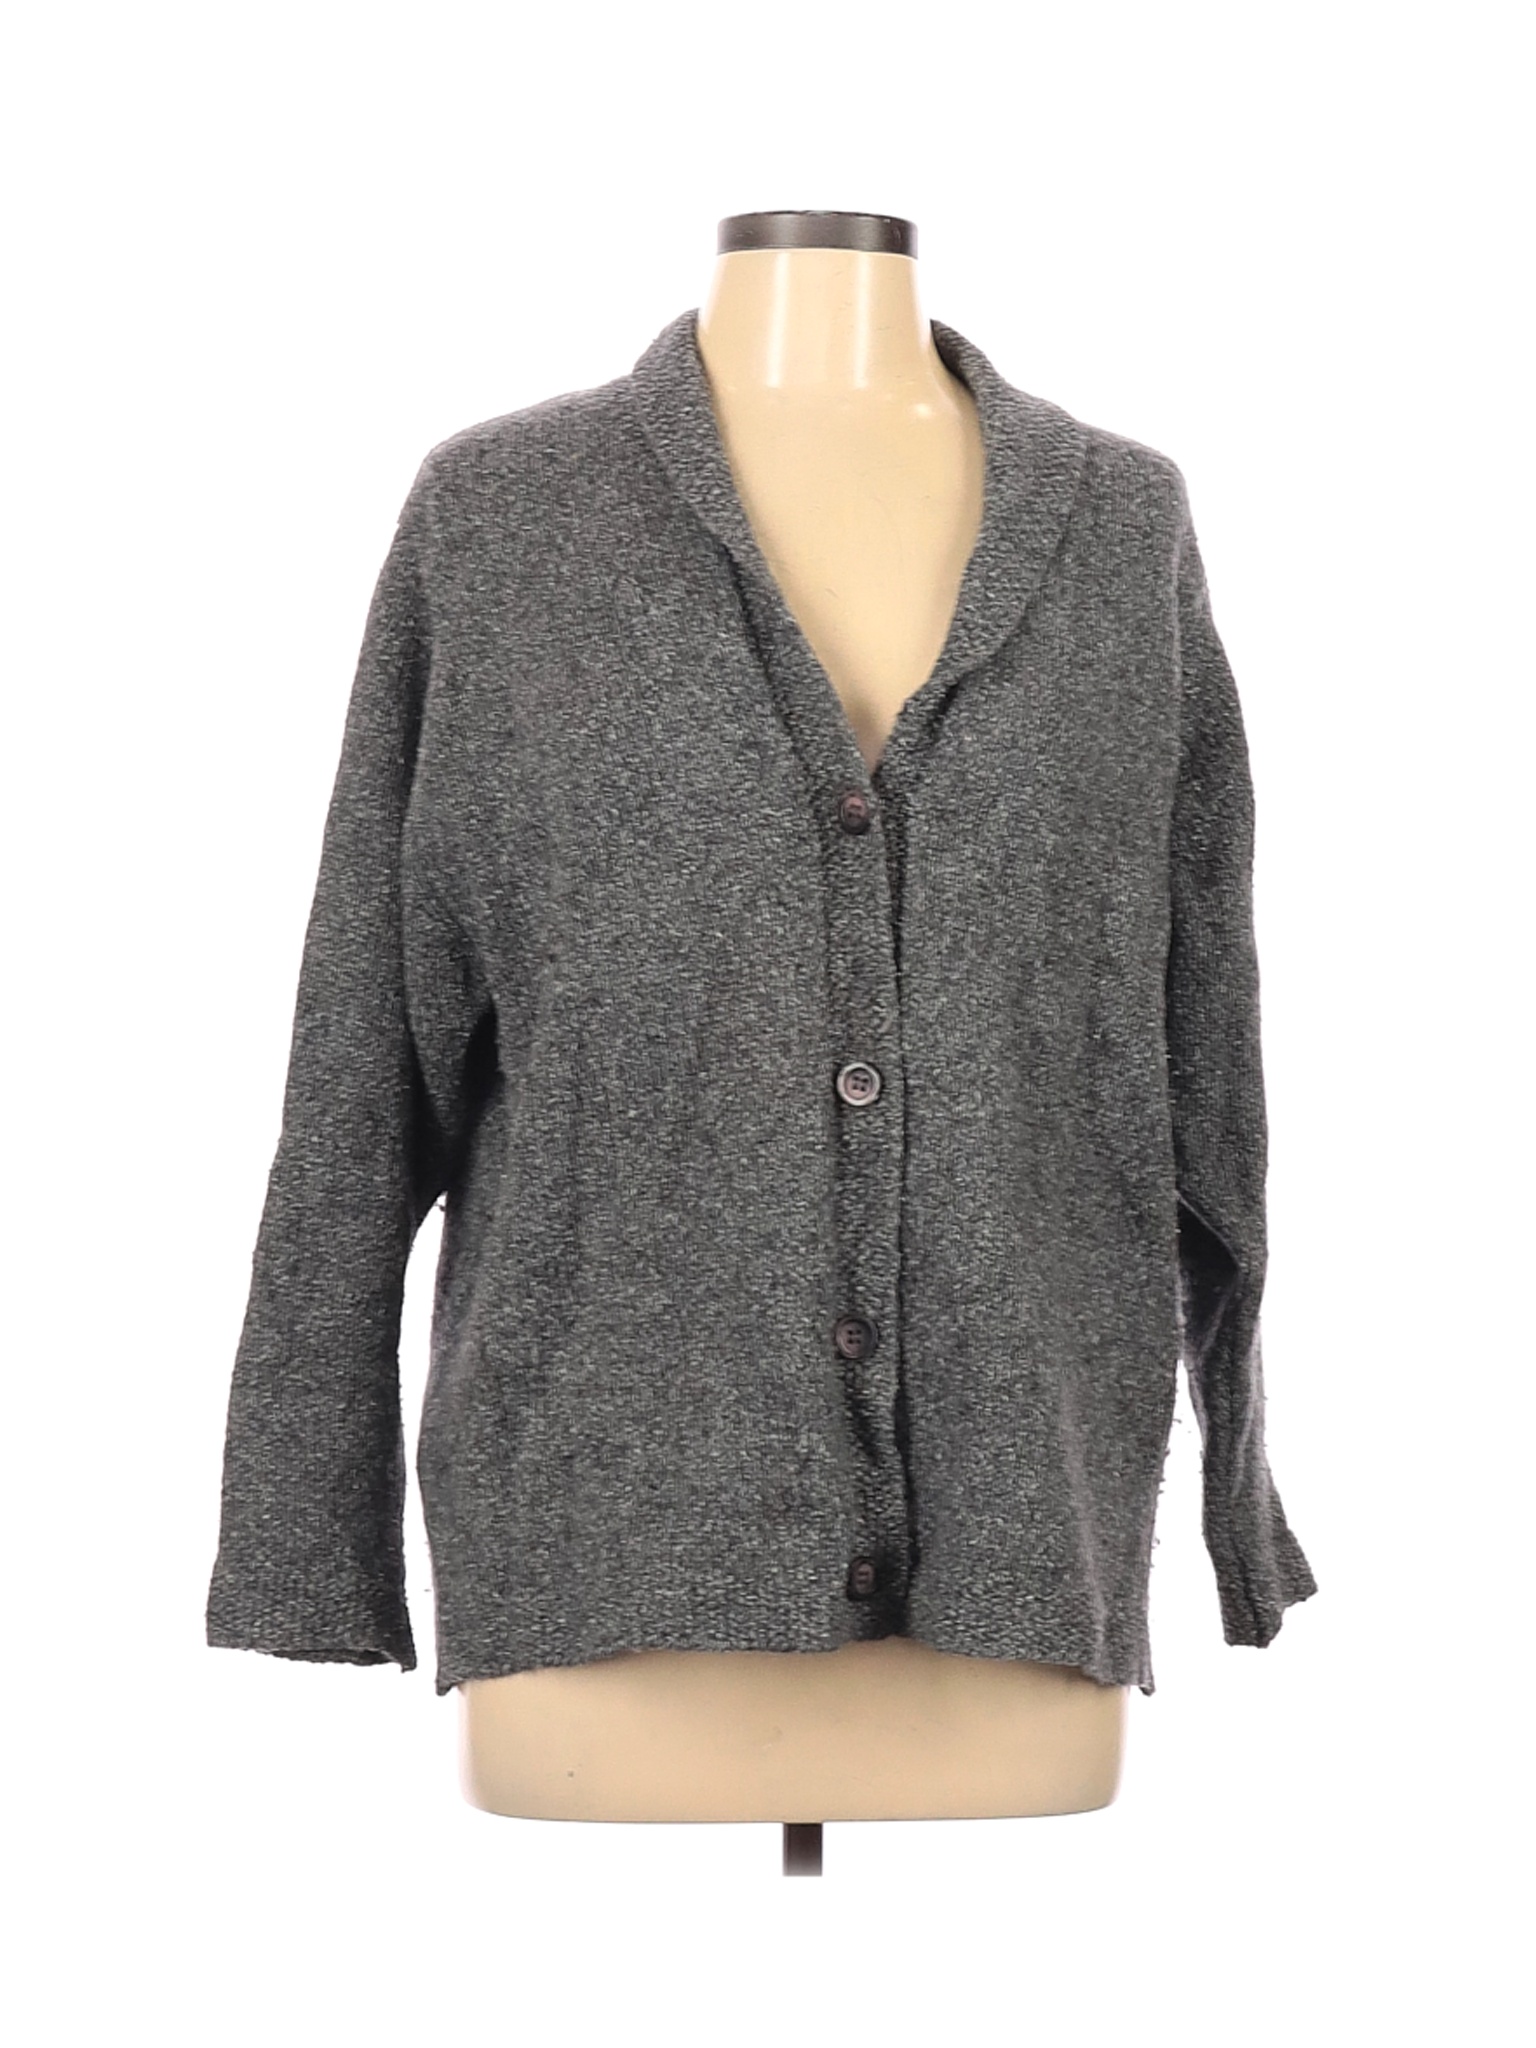 L.L.Bean Women Gray Wool Cardigan L | eBay